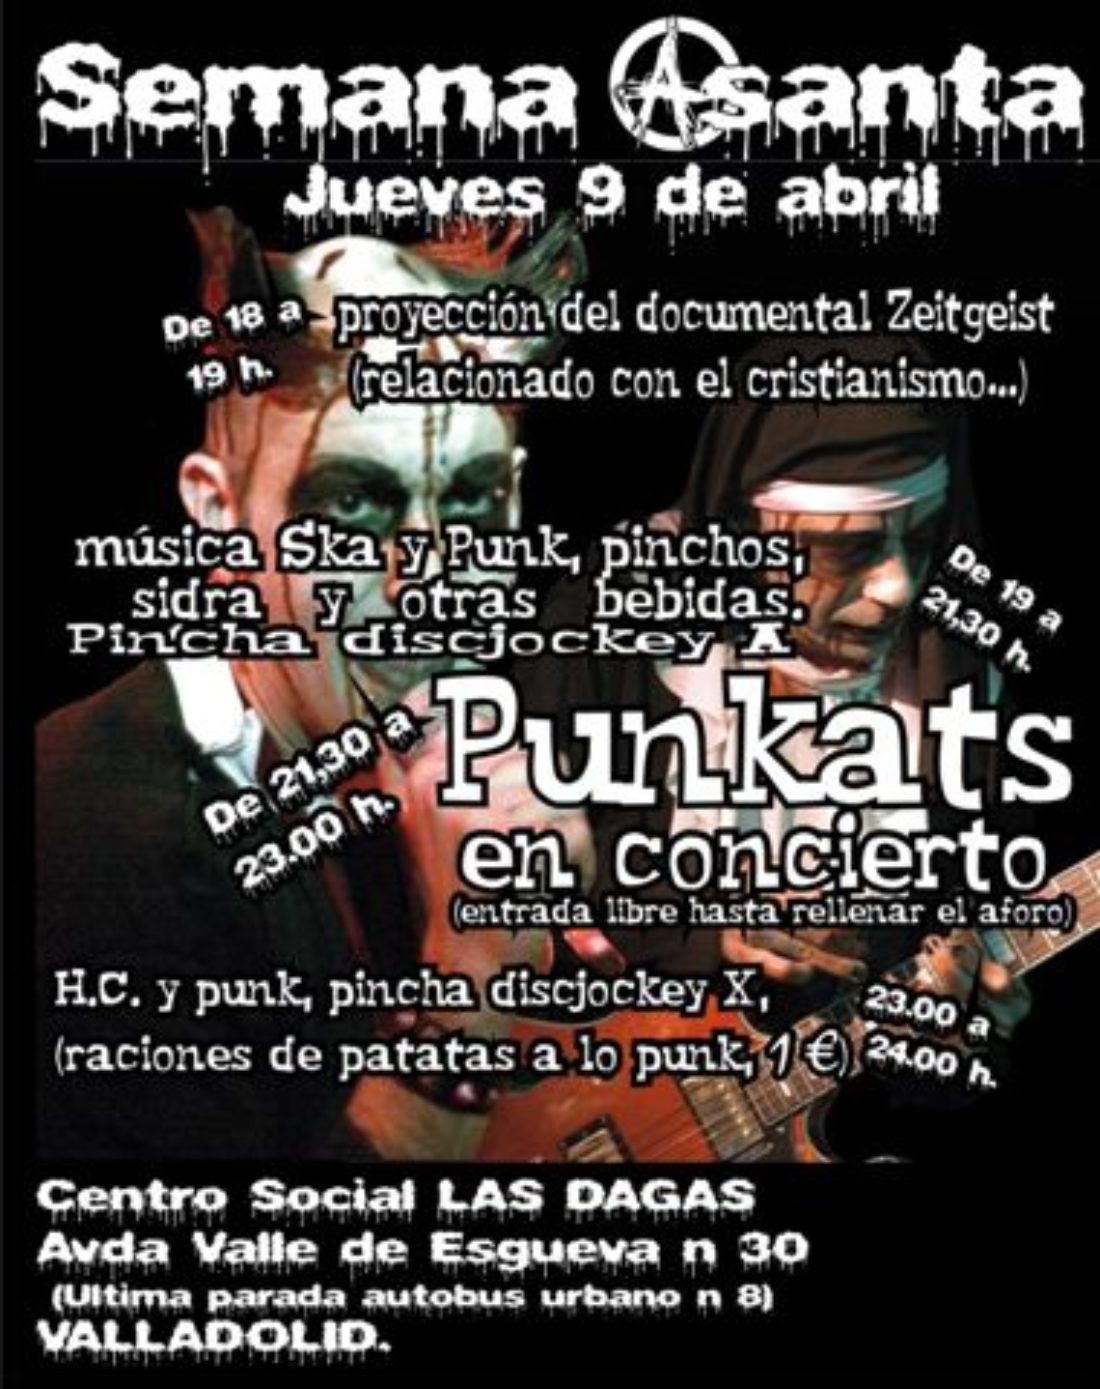 Conciertazo Ateo, jueves 9 de abril, nuevo centro social en Valladolid.  ￼